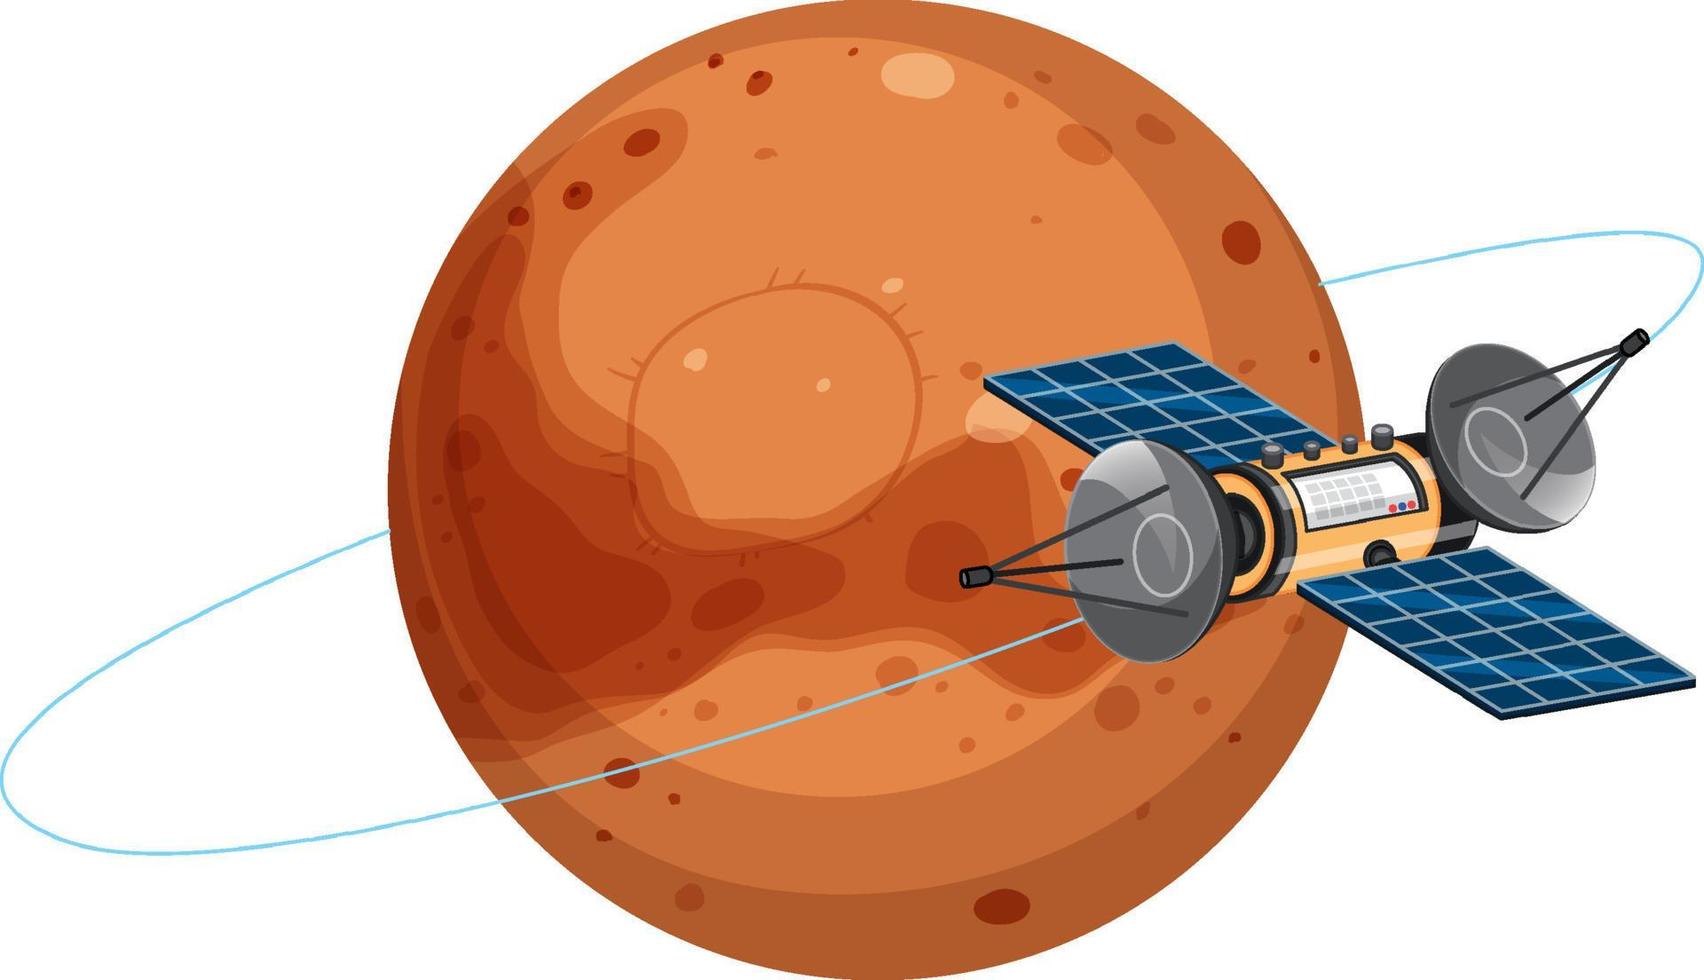 Mars planeet met satelliet vector